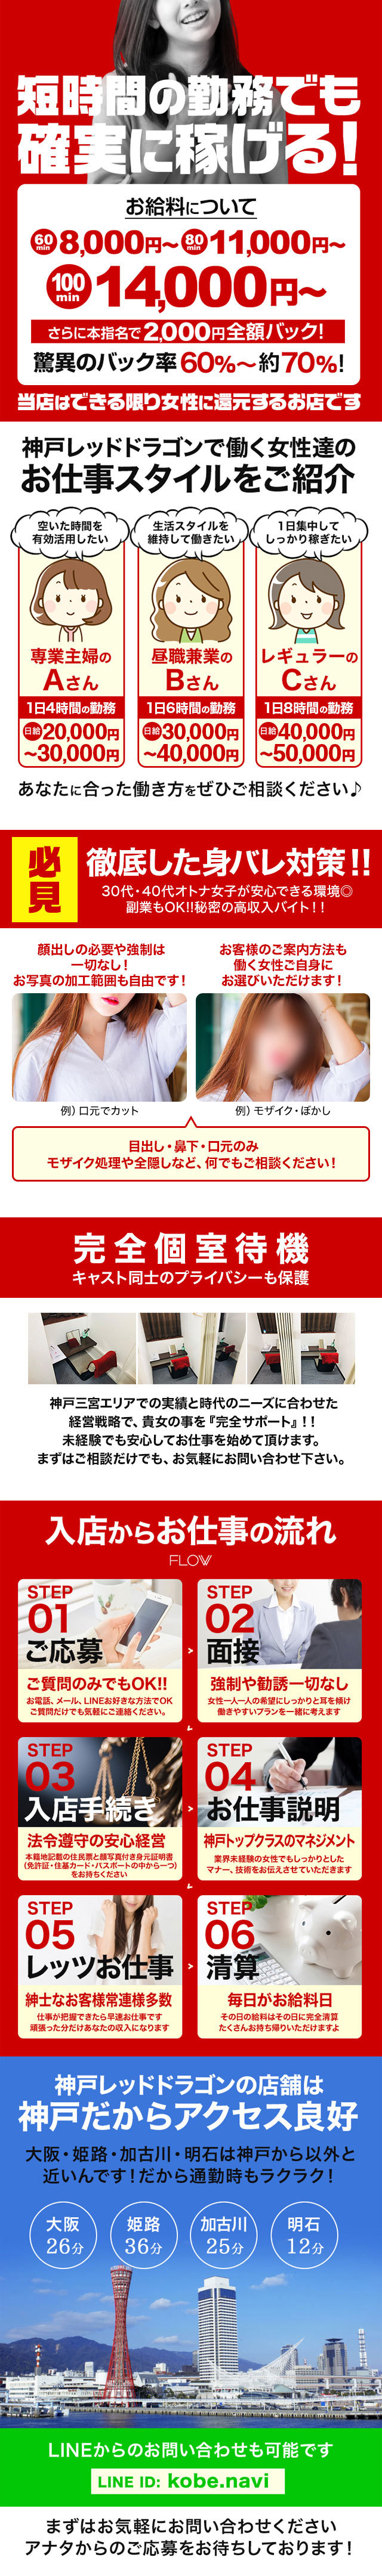 神戸レッドドラゴン求人info・POINT、徹底した身バレ対策30代・40代オトナ女子が安心できる環境